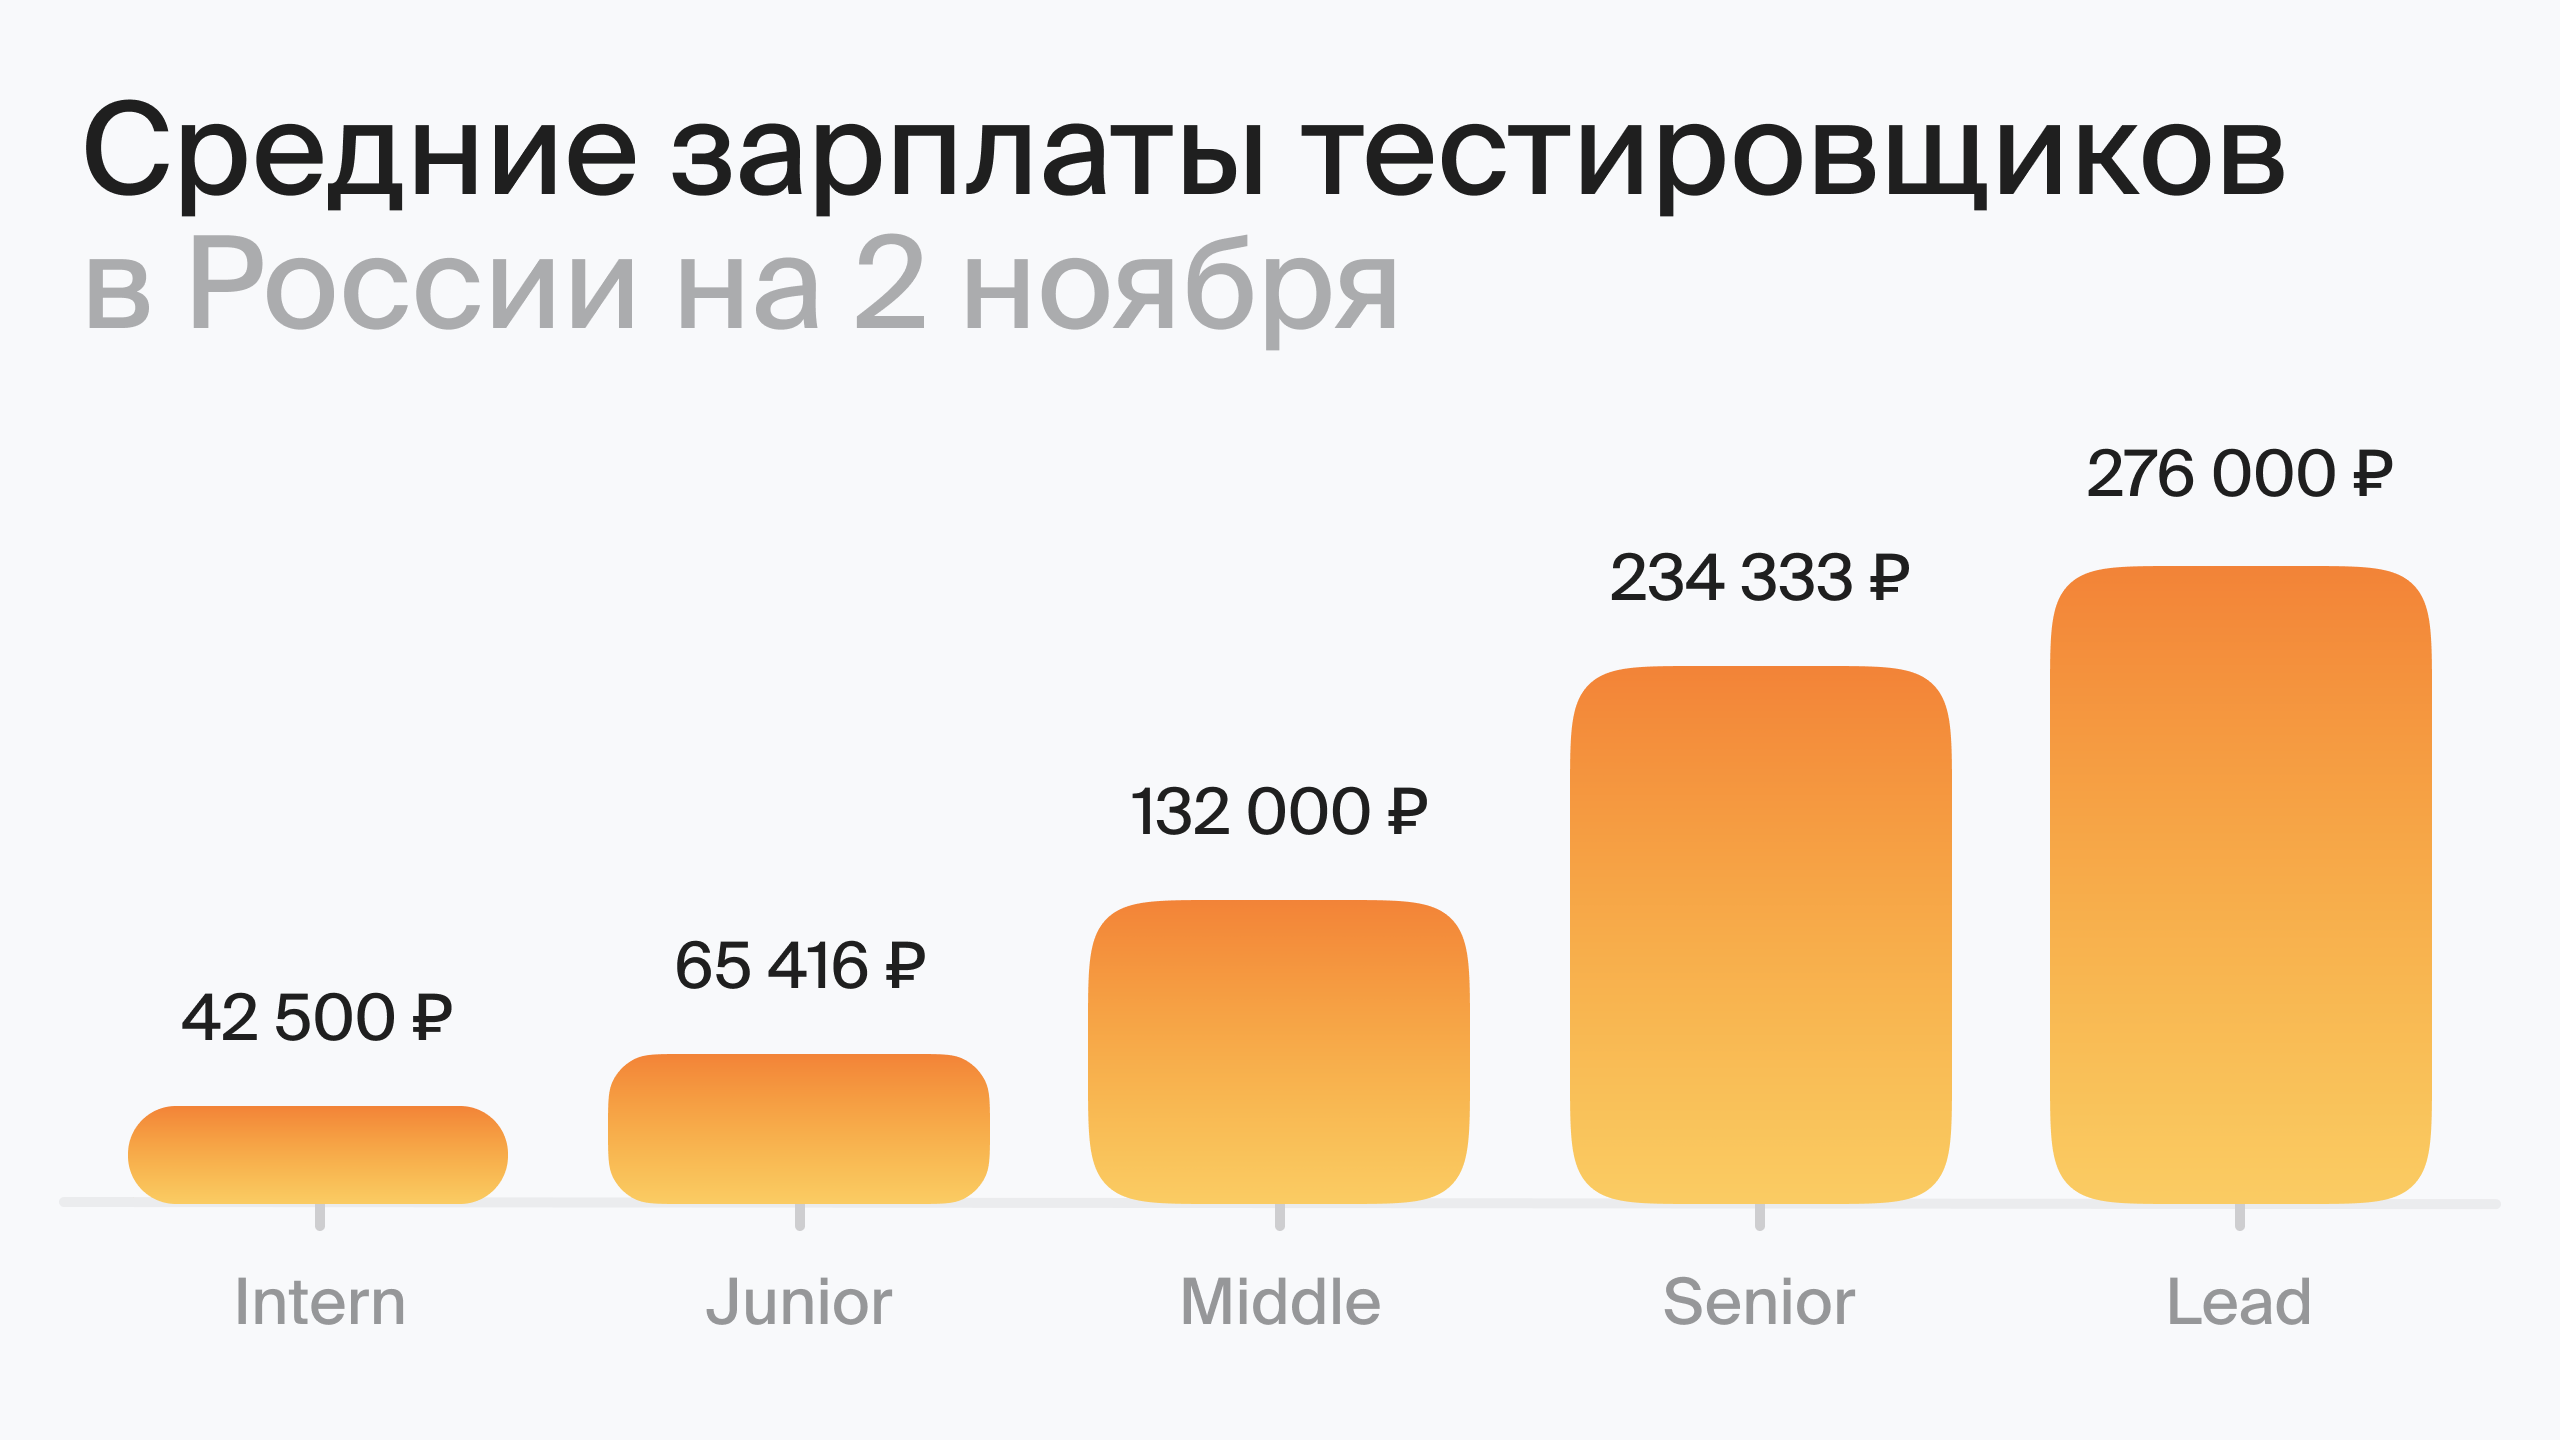 Средний уровень зарплаты в России на 3 октября (по данным Хабр Карьера)